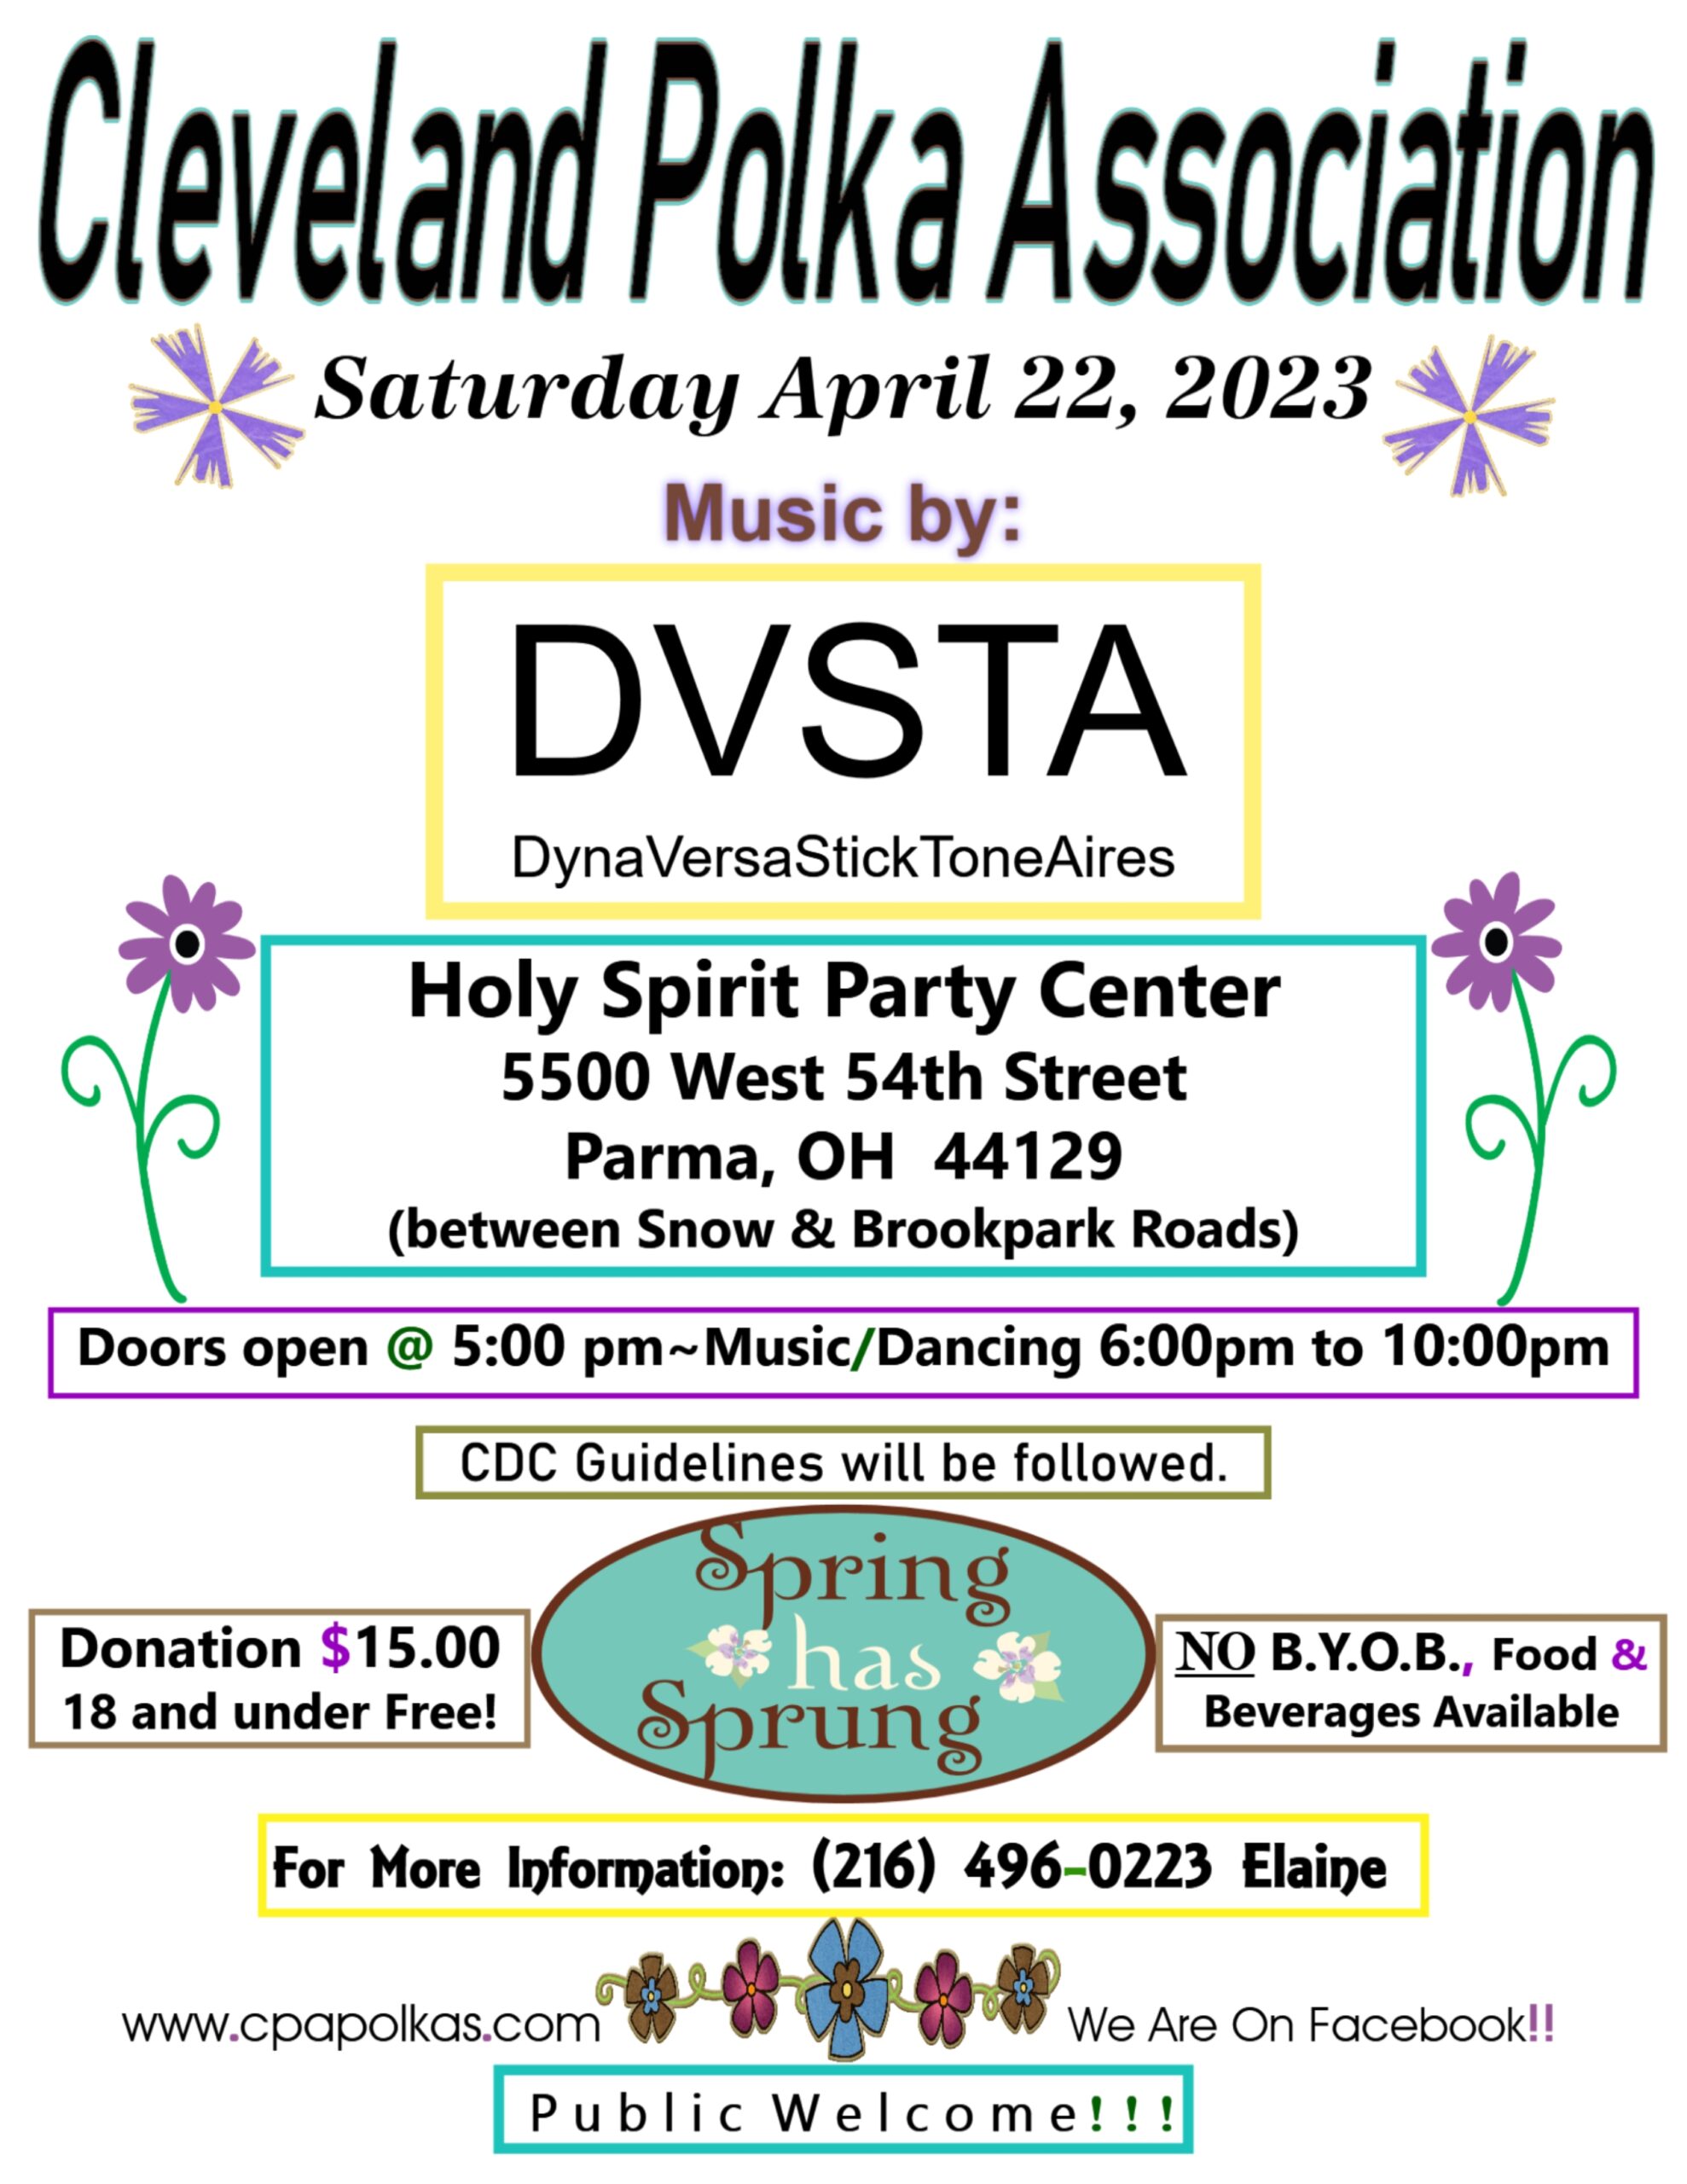 Cleveland Polka Association Spring Dance